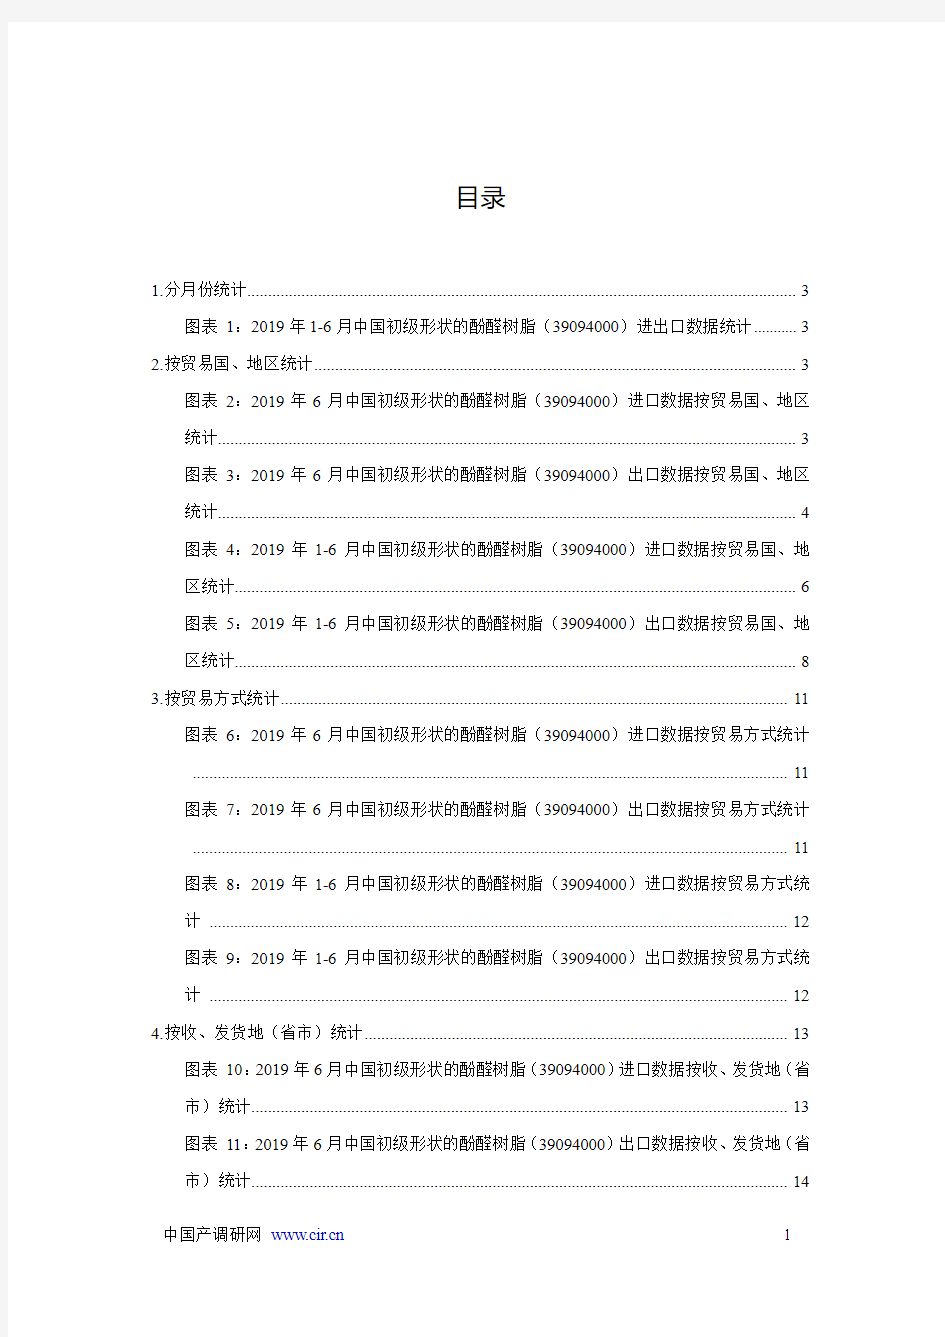 2019年1-6月中国初级形状的酚醛树脂(39094000)进出口统计报告